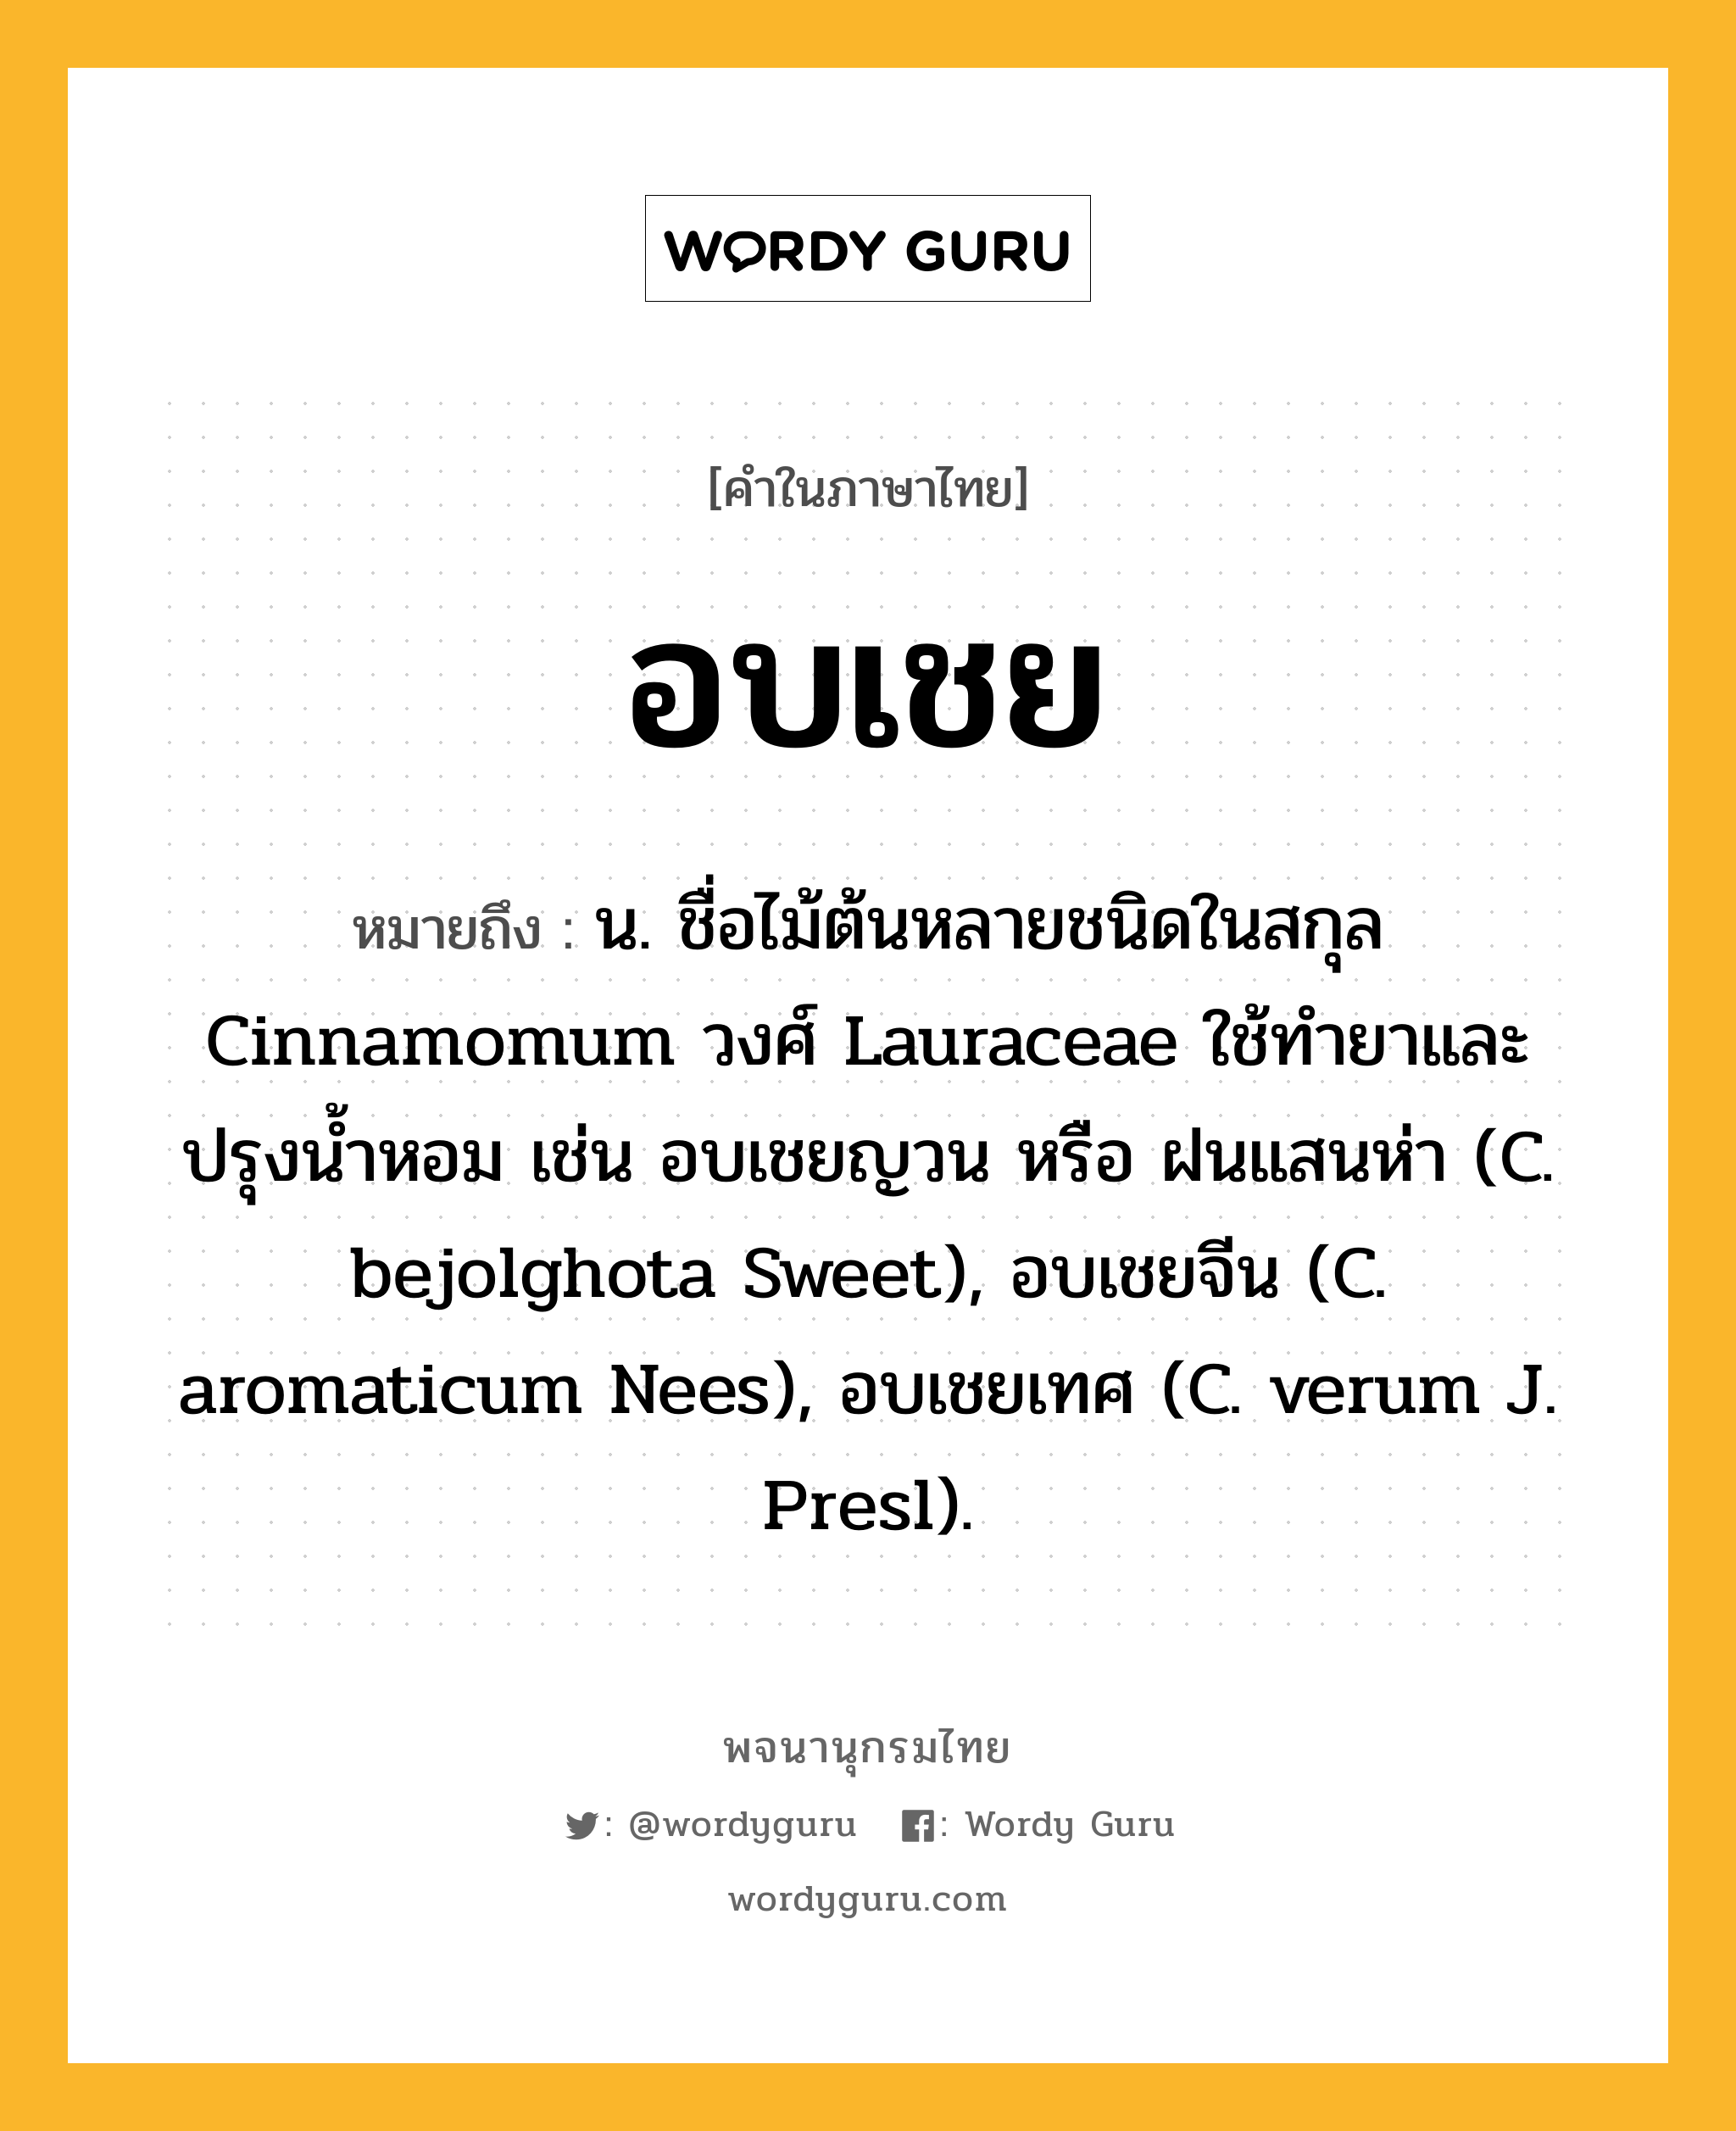 อบเชย หมายถึงอะไร?, คำในภาษาไทย อบเชย หมายถึง น. ชื่อไม้ต้นหลายชนิดในสกุล Cinnamomum วงศ์ Lauraceae ใช้ทํายาและปรุงนํ้าหอม เช่น อบเชยญวน หรือ ฝนแสนห่า (C. bejolghota Sweet), อบเชยจีน (C. aromaticum Nees), อบเชยเทศ (C. verum J. Presl).